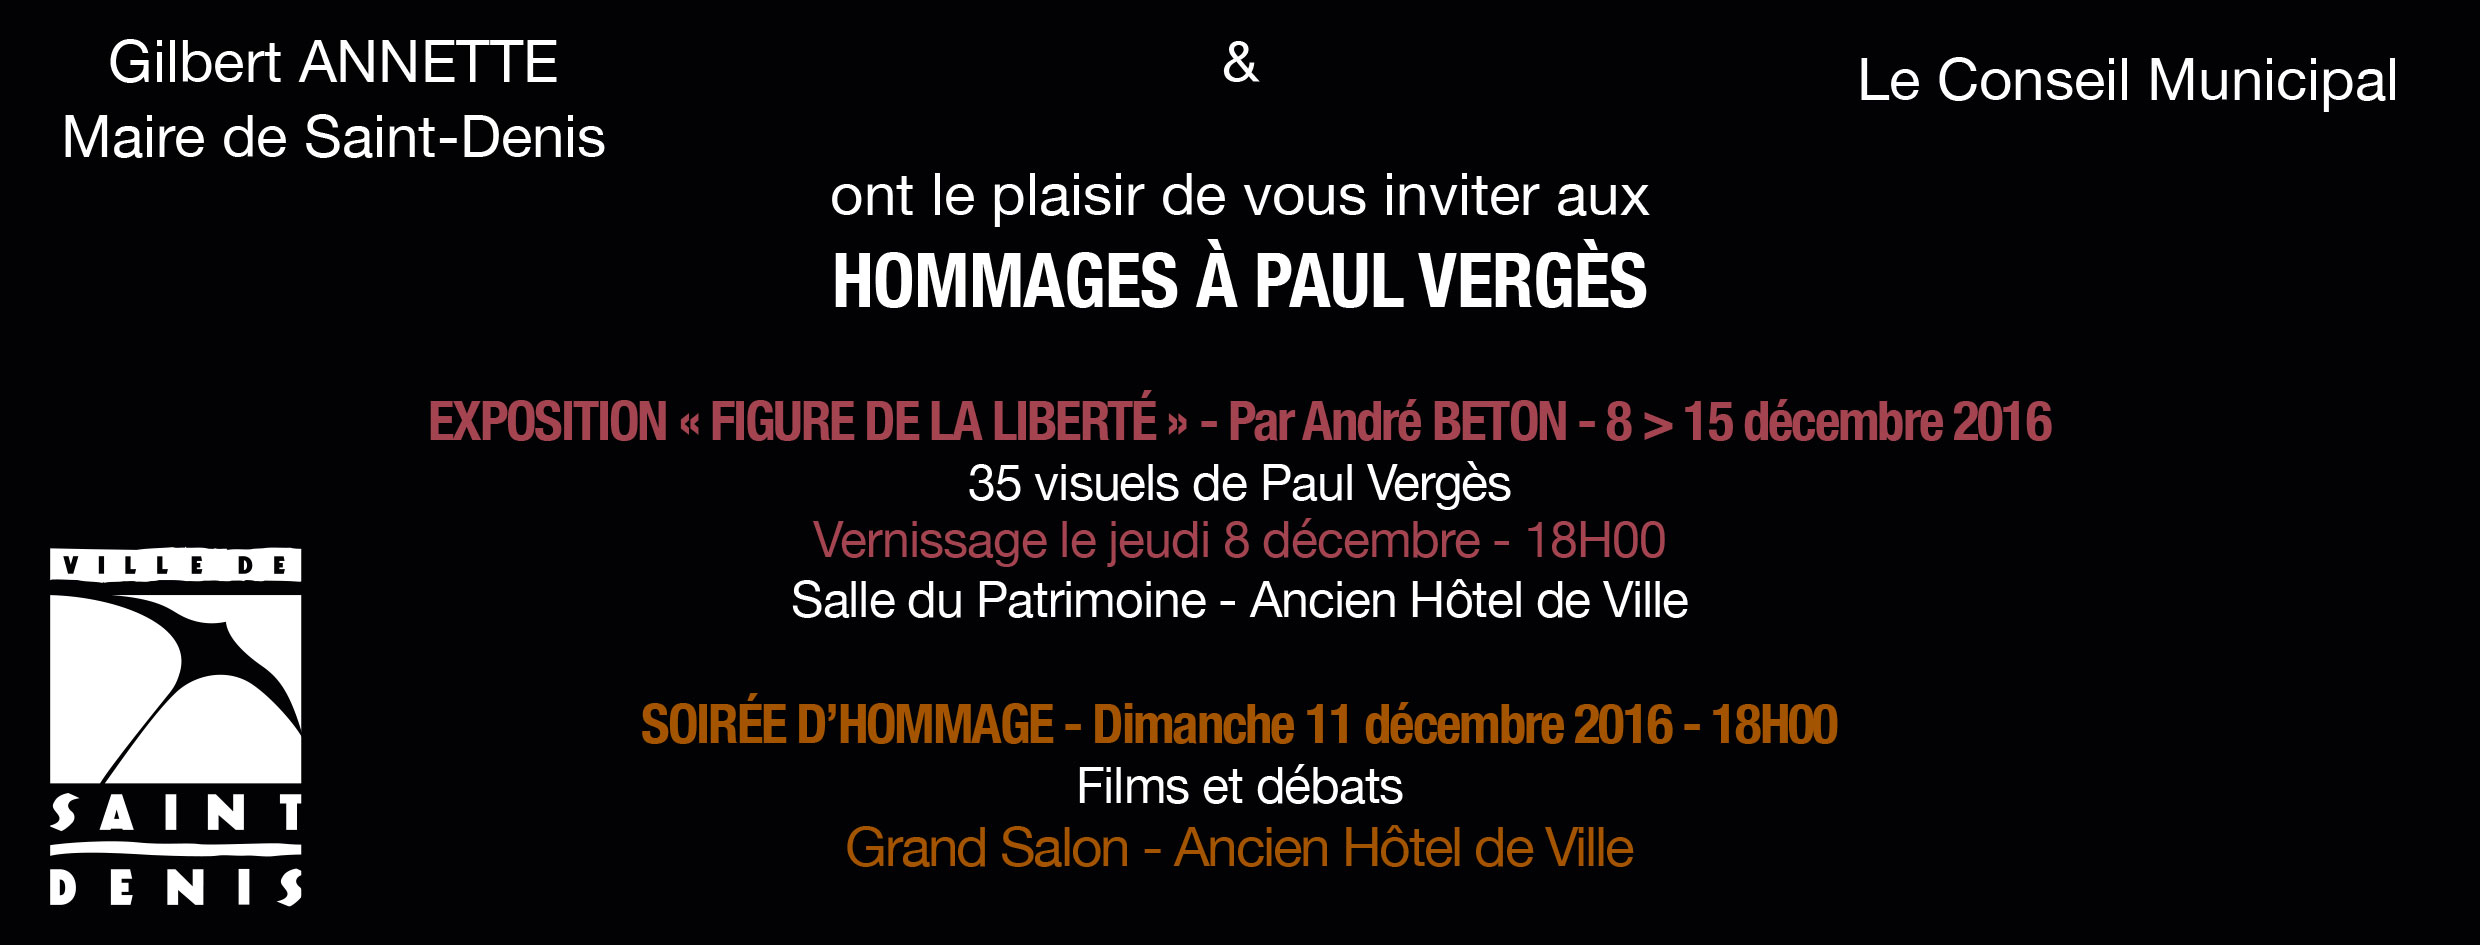 Paul VERGES au Grand Salon de l'Hotel de Ville de Saint-Denis